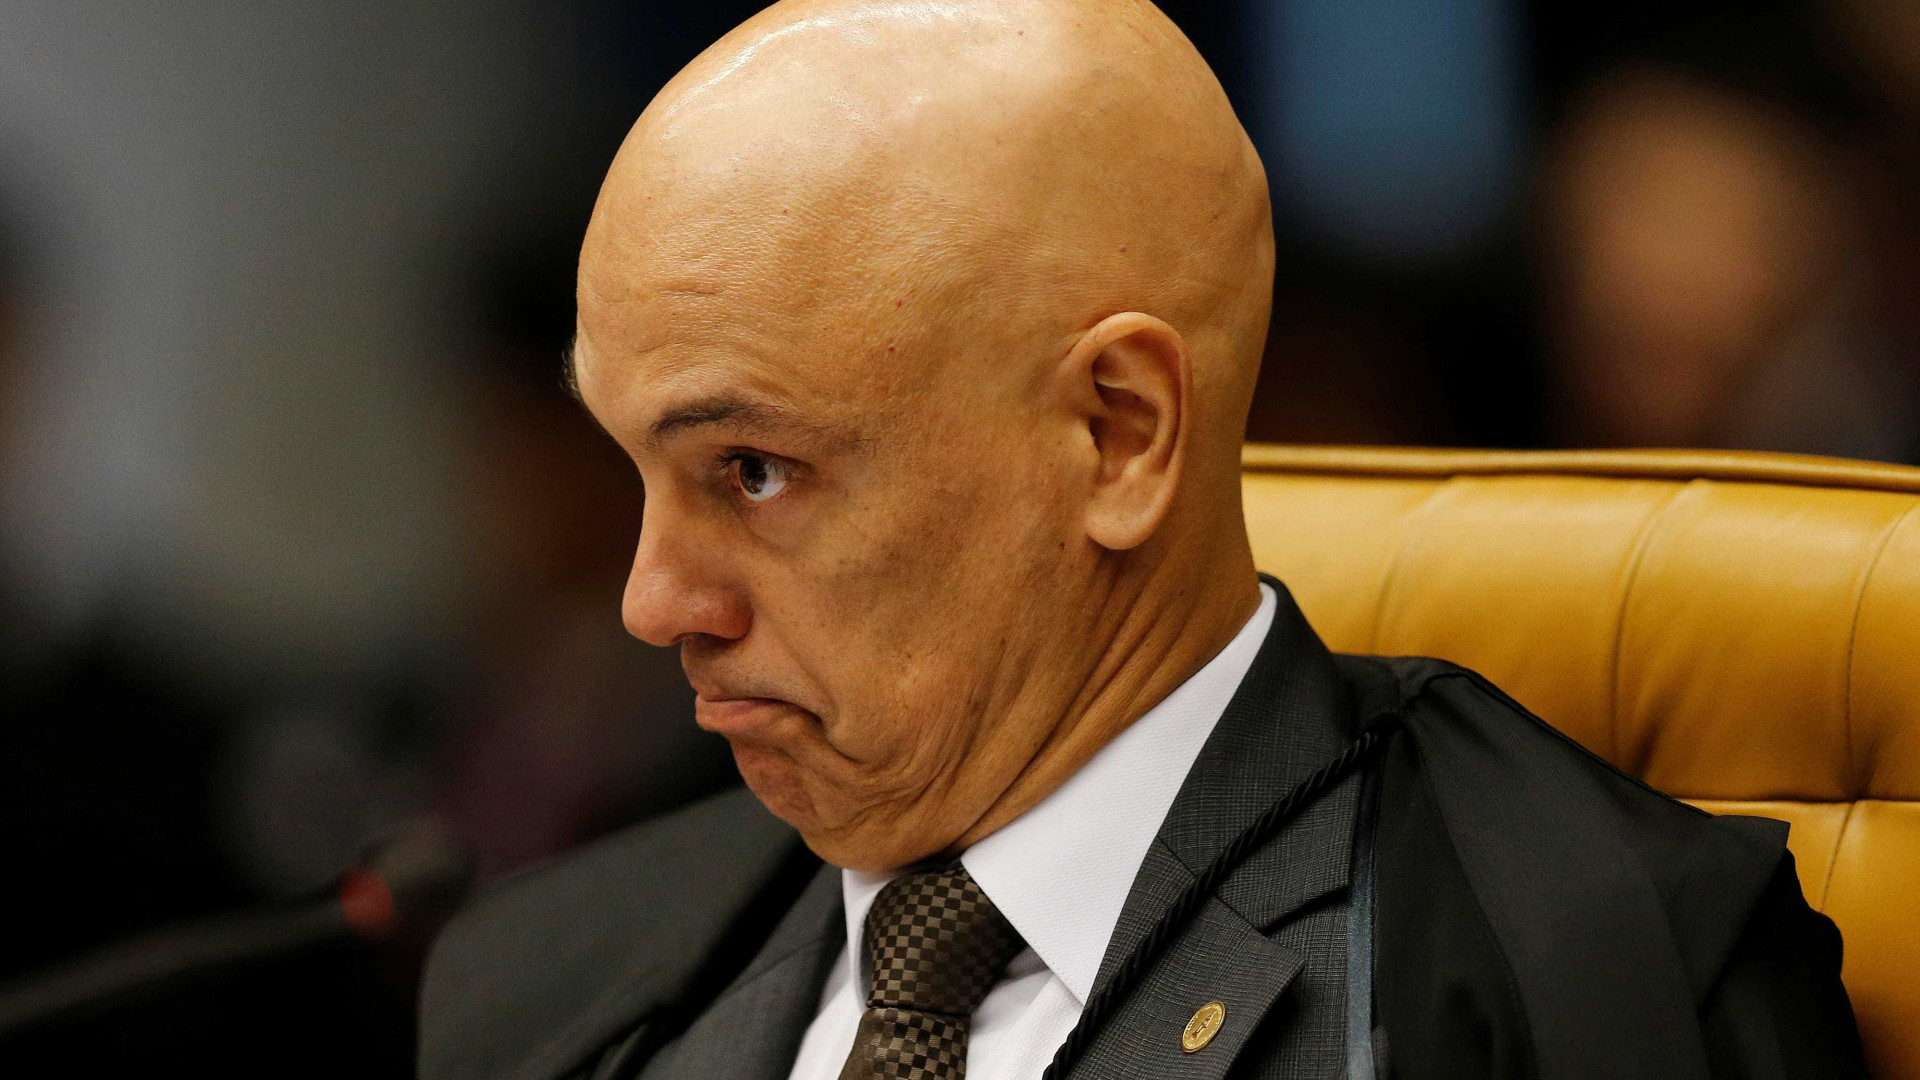 Alexandre suspende reintegração de posse contra 800 famílias em São Paulo